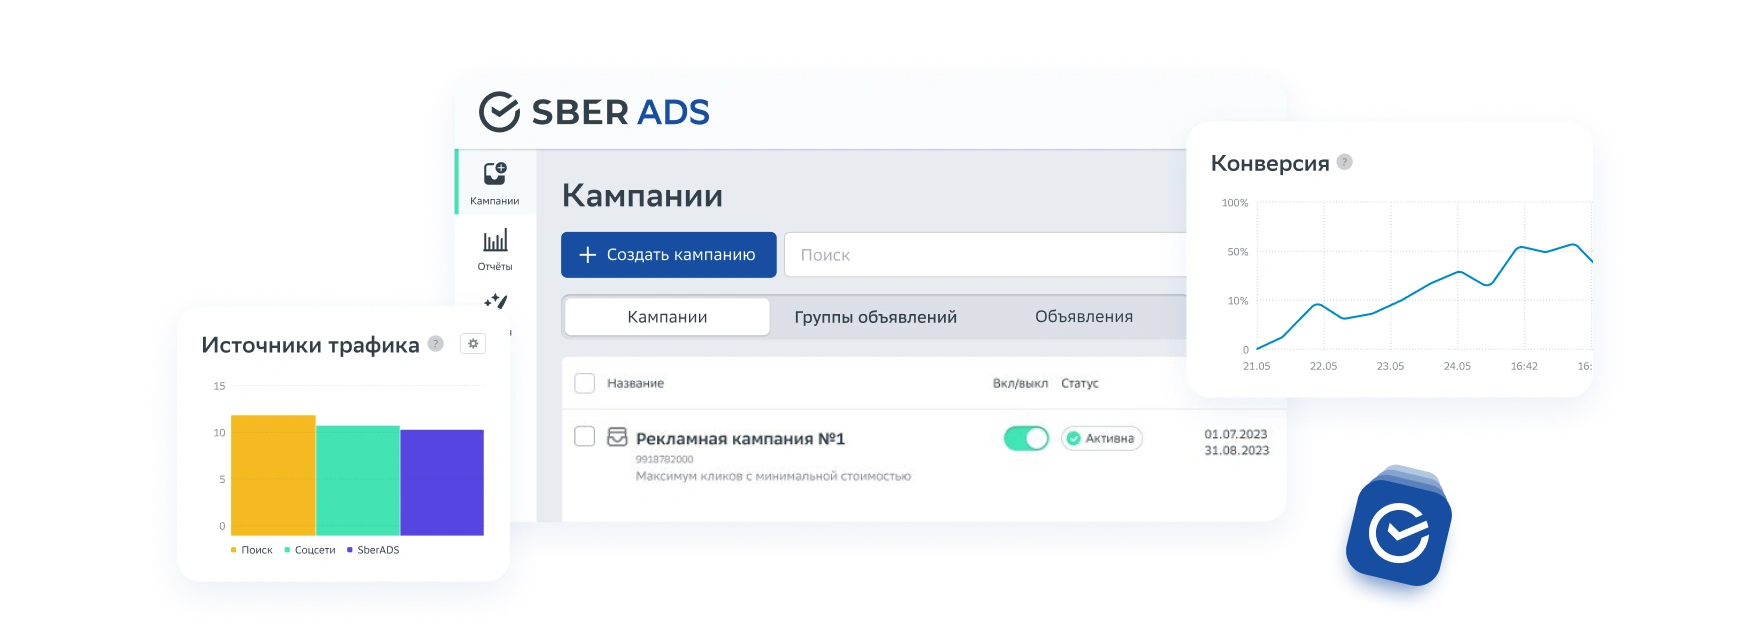 Приложение SberAds: удобное управление рекламными кампаниями на мобильном устройстве